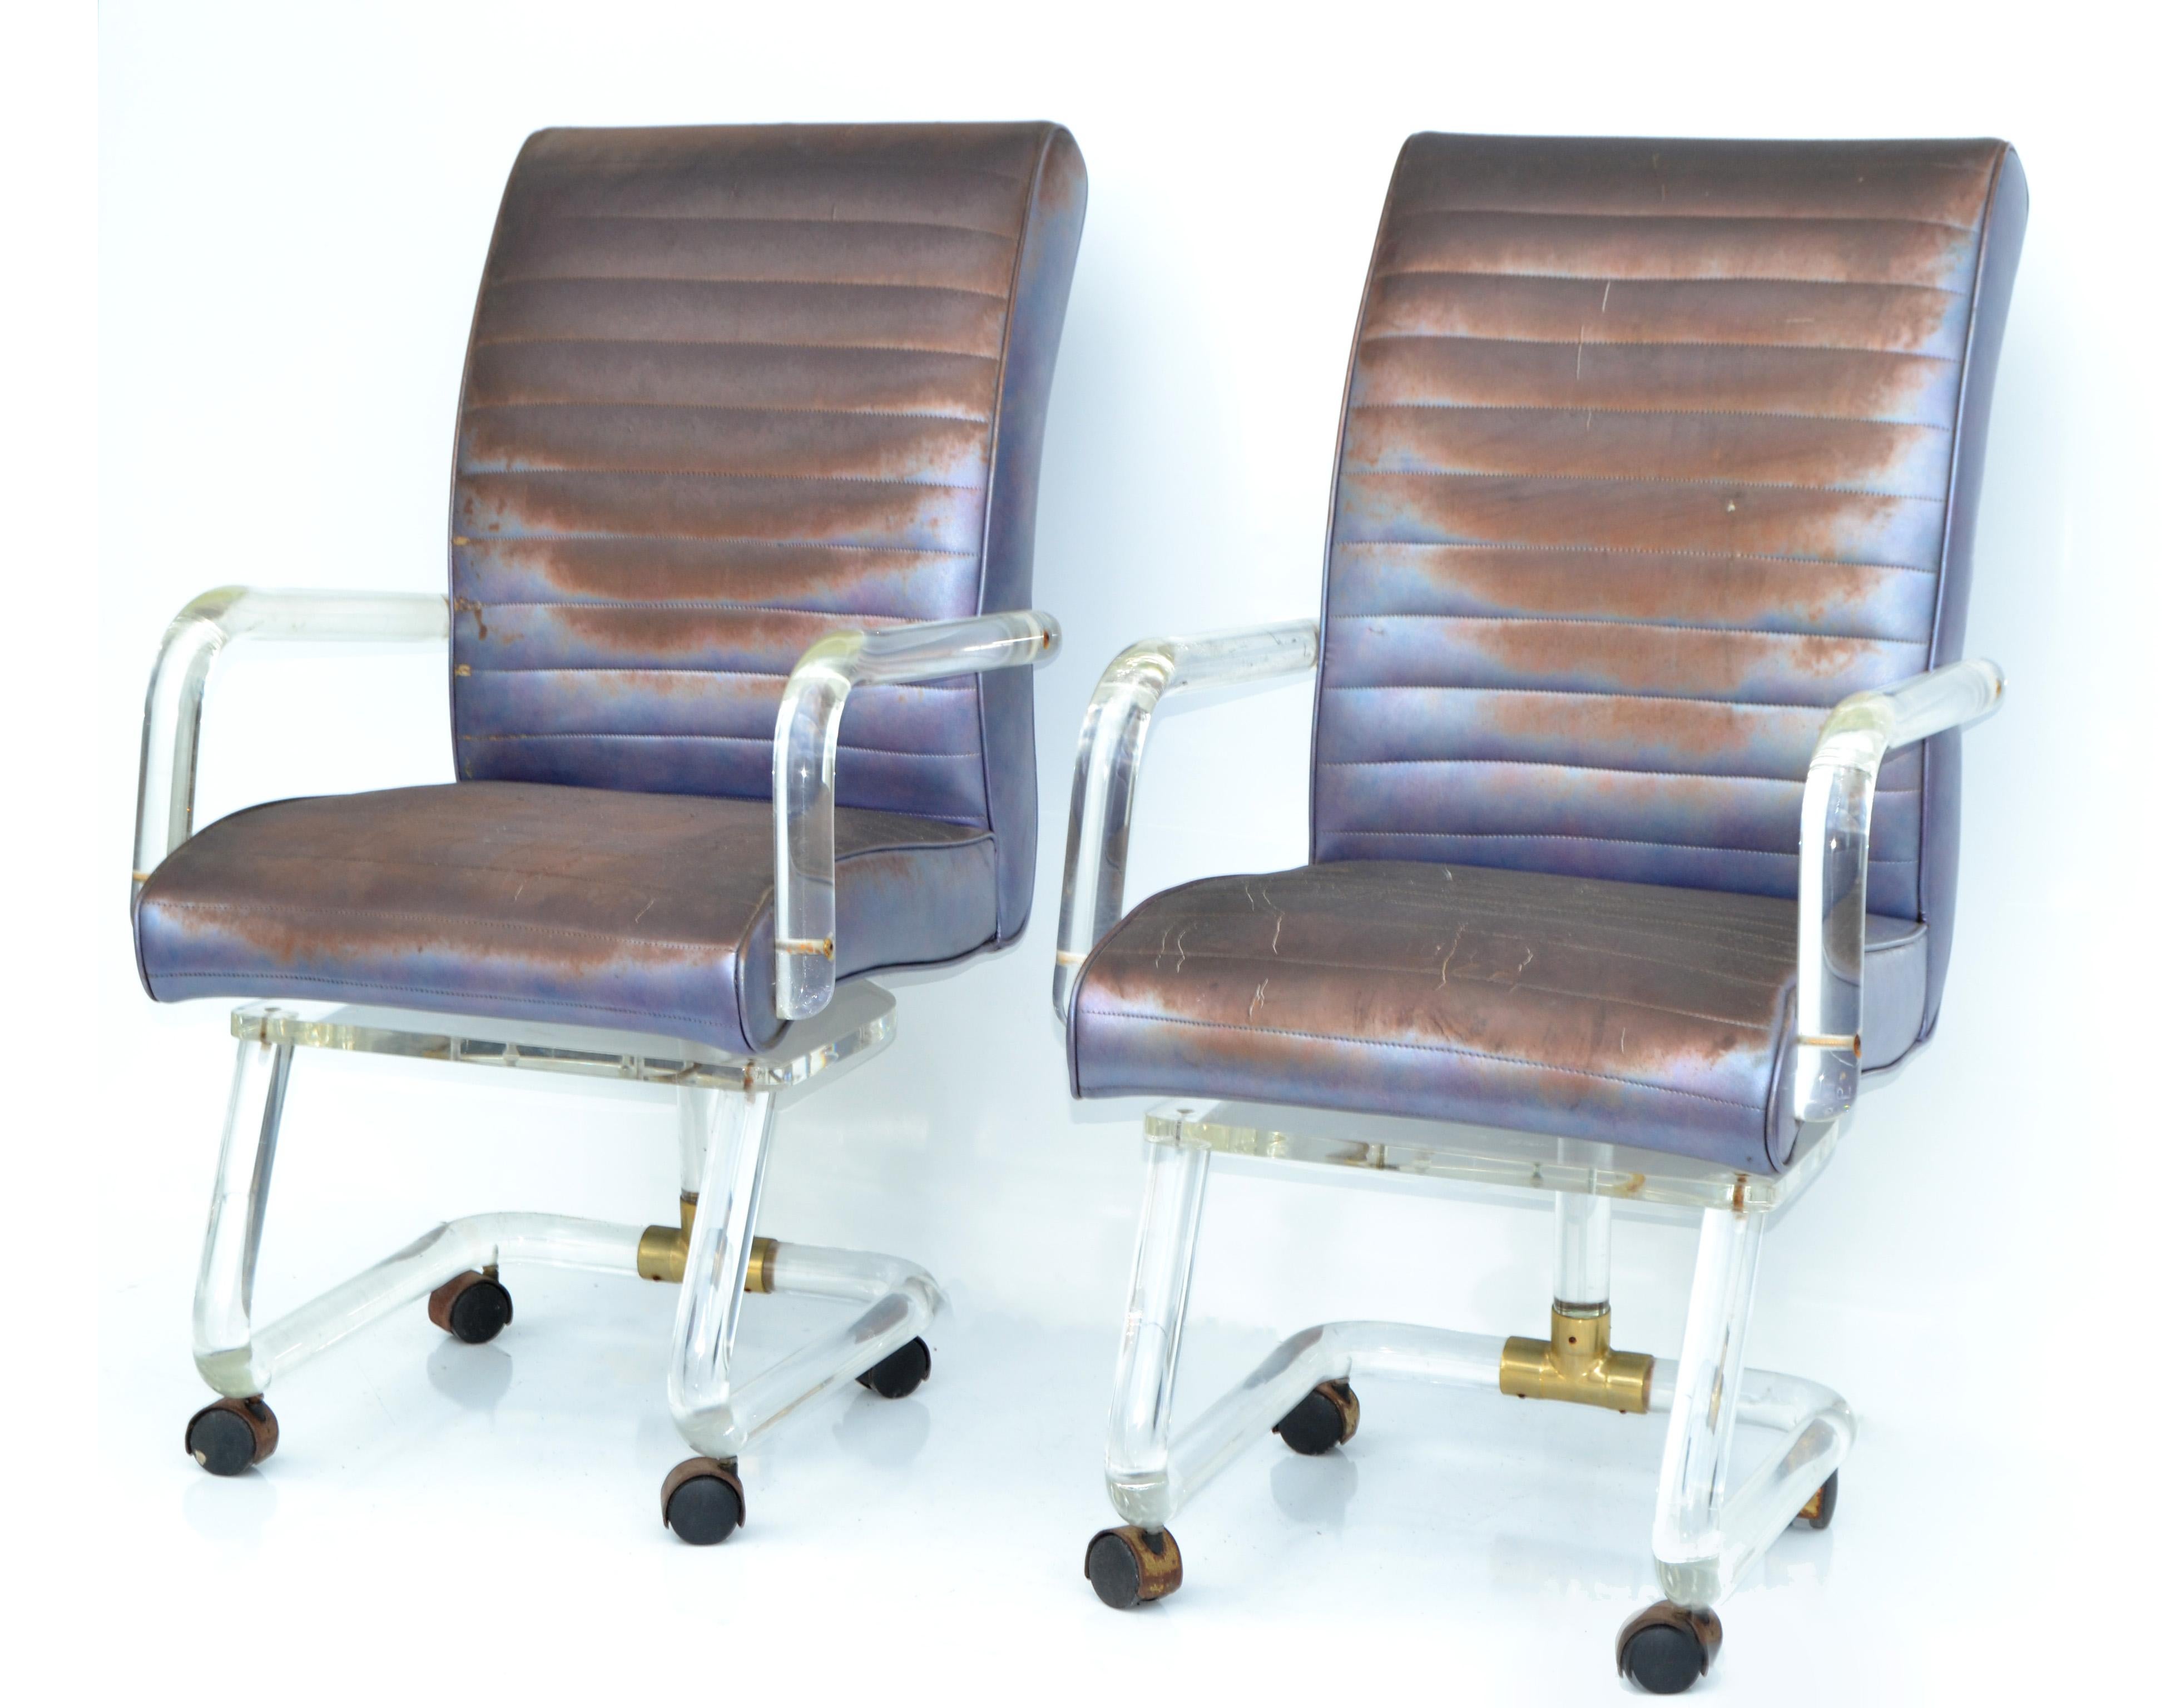 Paire de chaises ou de fauteuils de bureau ou de salle à manger en lucite, de style moderne du milieu du siècle, sur roulettes avec détails en laiton, fabriqués en Amérique à la fin du 20e siècle.
La tapisserie d'origine en bleu électrique a besoin